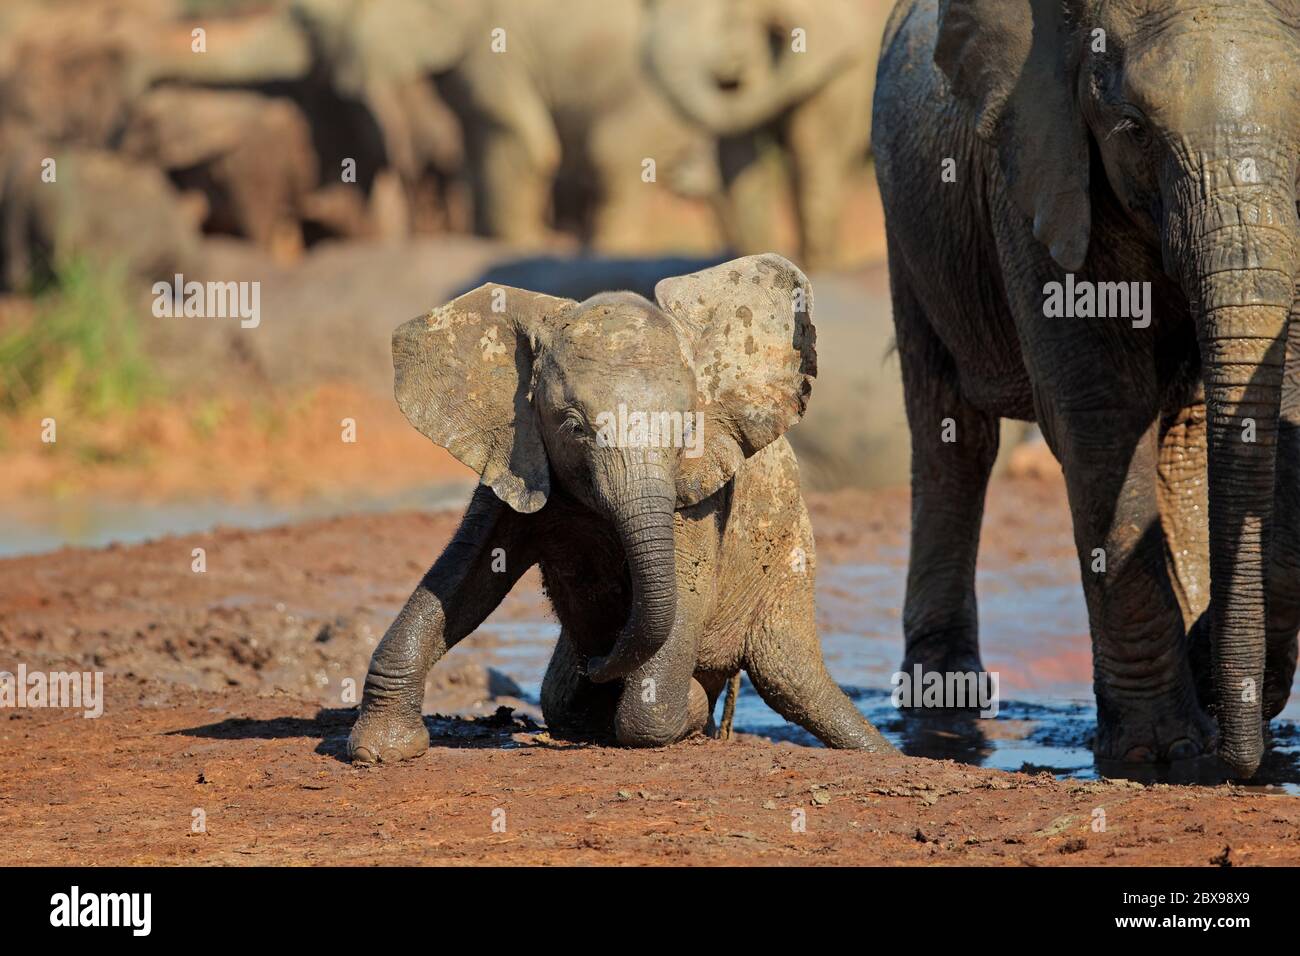 Un joli bébé éléphant d'Afrique (Loxodonta africana) jouant dans la boue, Parc national d'éléphants d'Addo, Afrique du Sud Banque D'Images